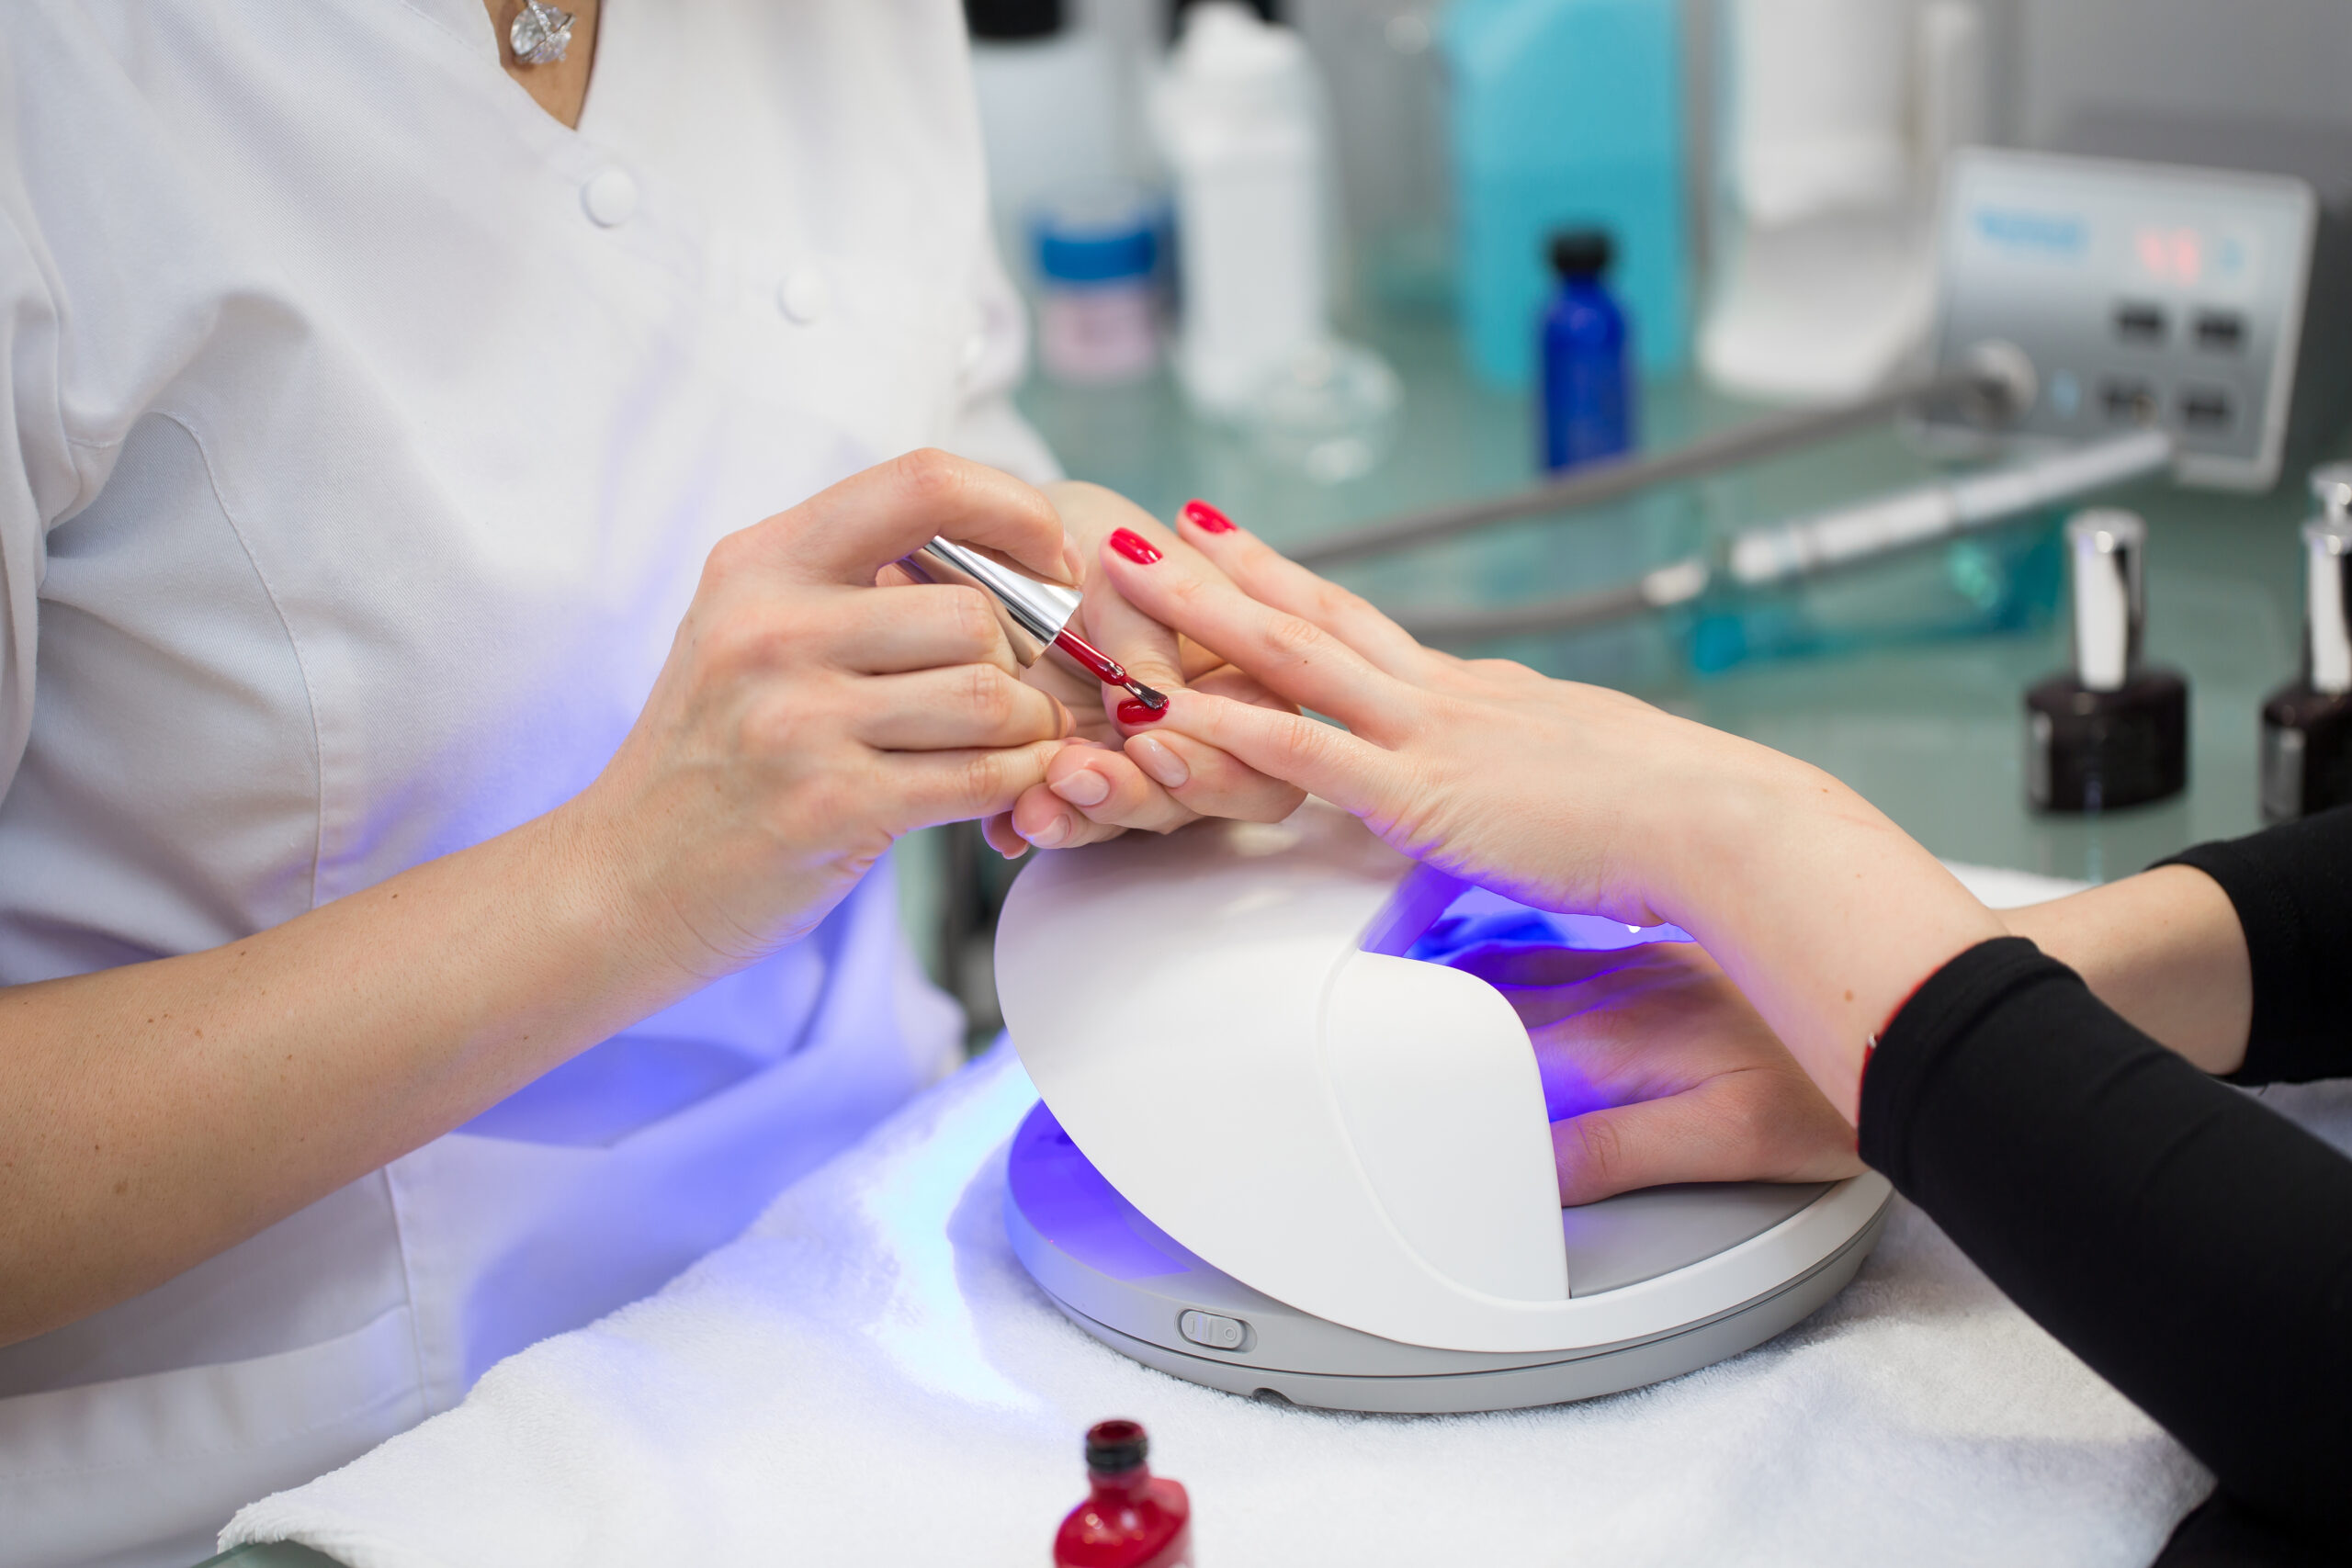 UV Lamp – Nail salons lamps may increase skin cancer risk